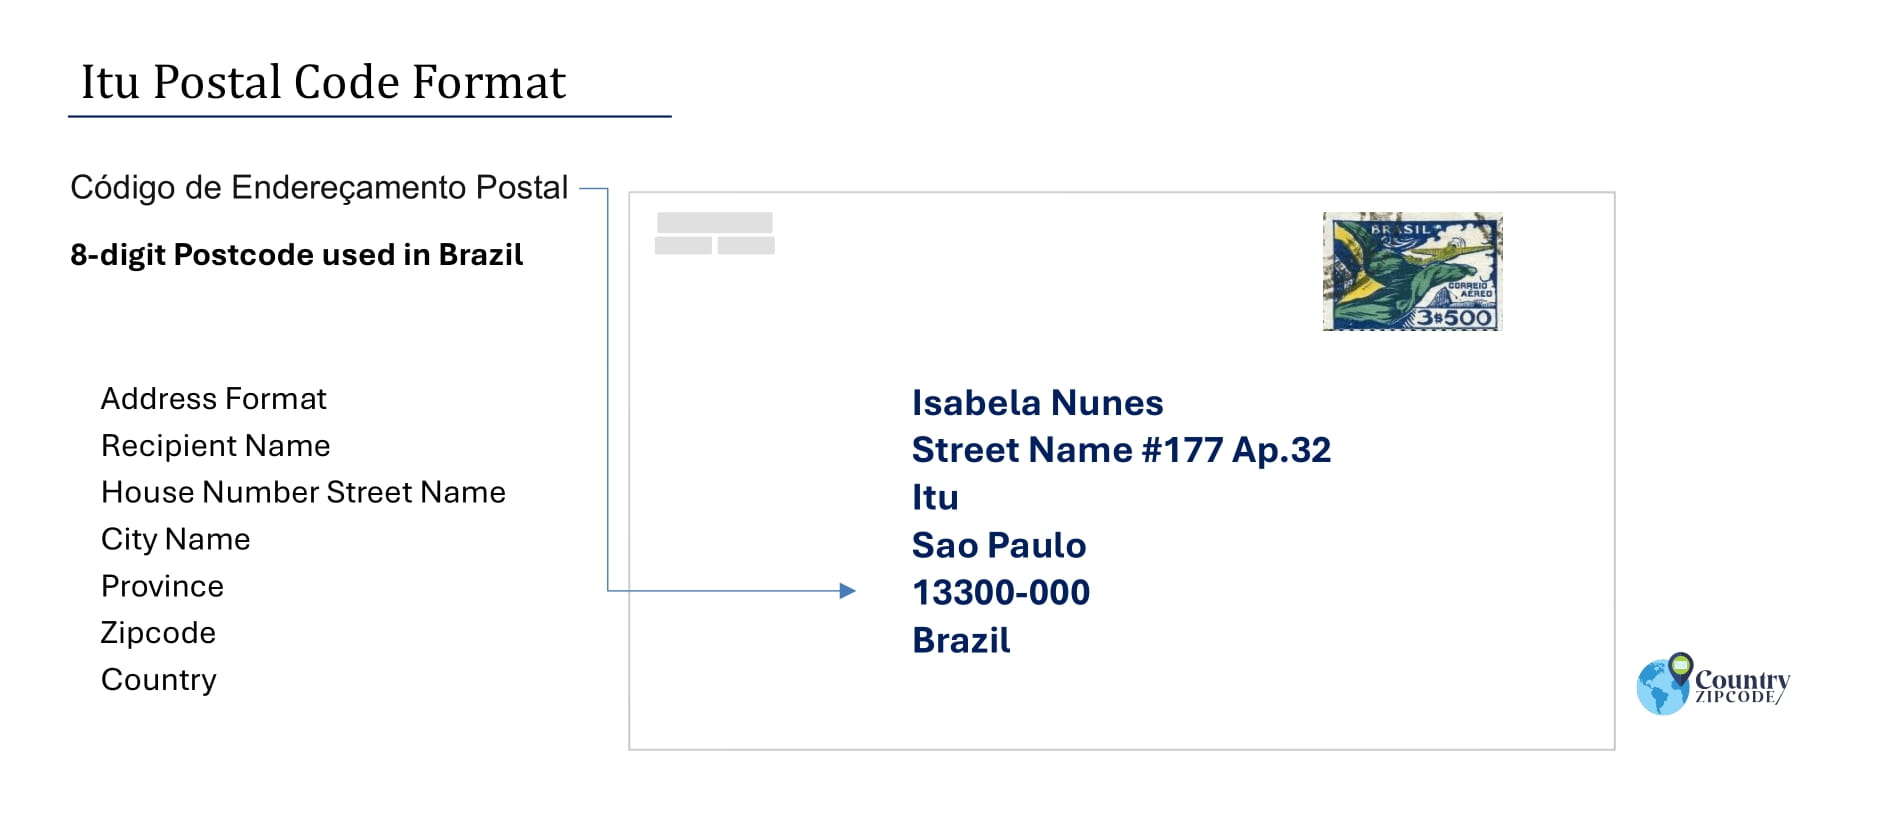 Example of Codigo de Enderecamento Postal and Address format of Itu Brazil